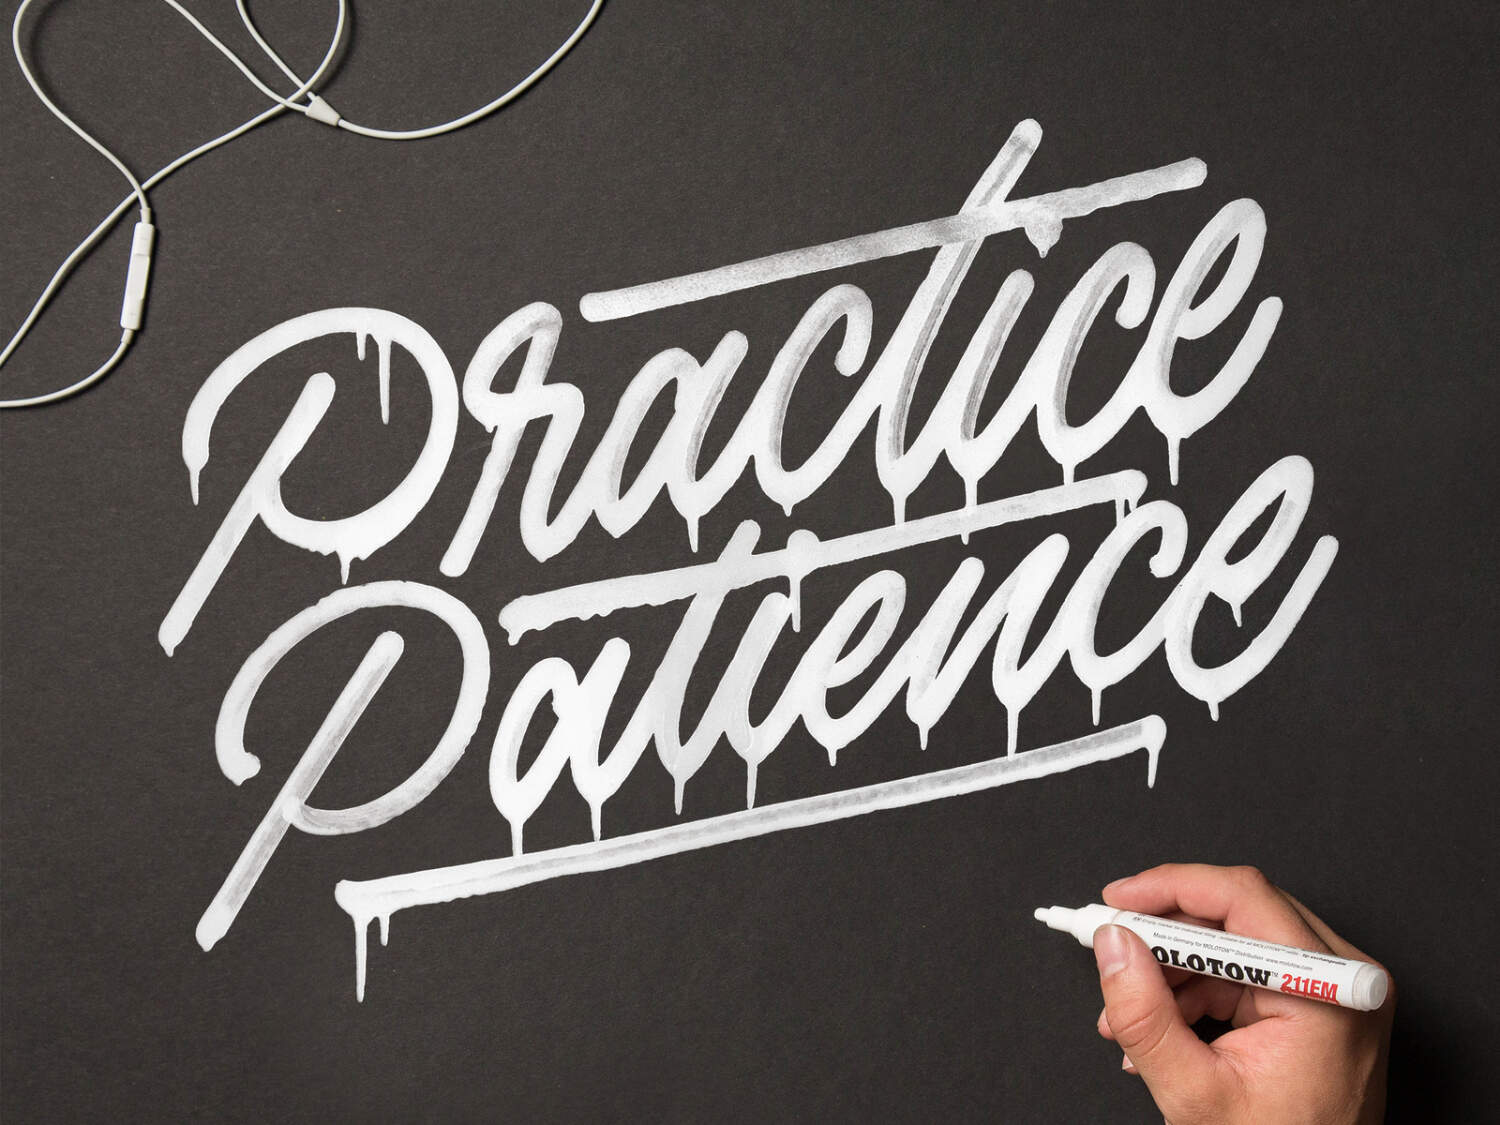 practice patience